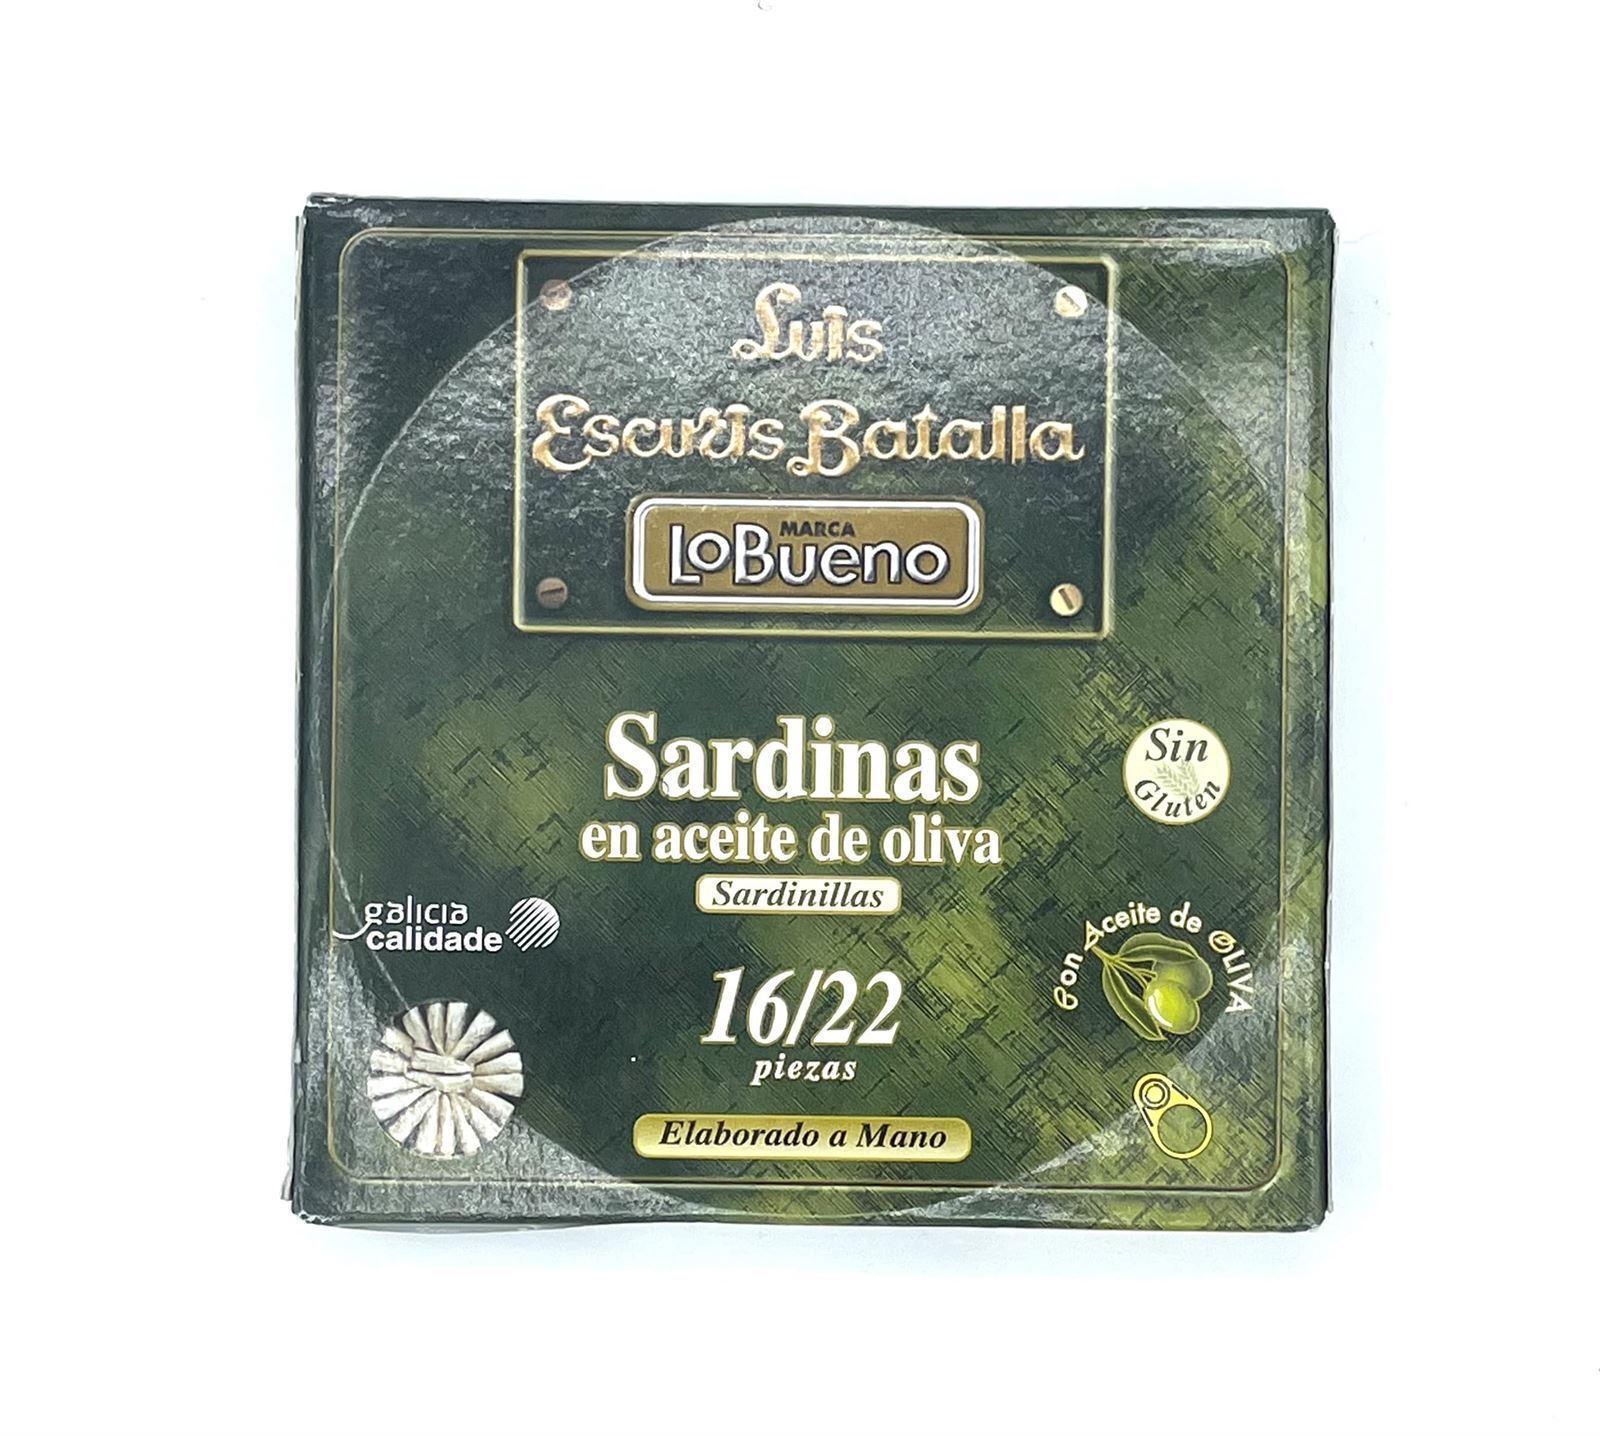 SARDINAS EN ACEITE DE OLIVA 16/22 "SARDINILLAS" RO-180 LO BUENO - Imagen 2